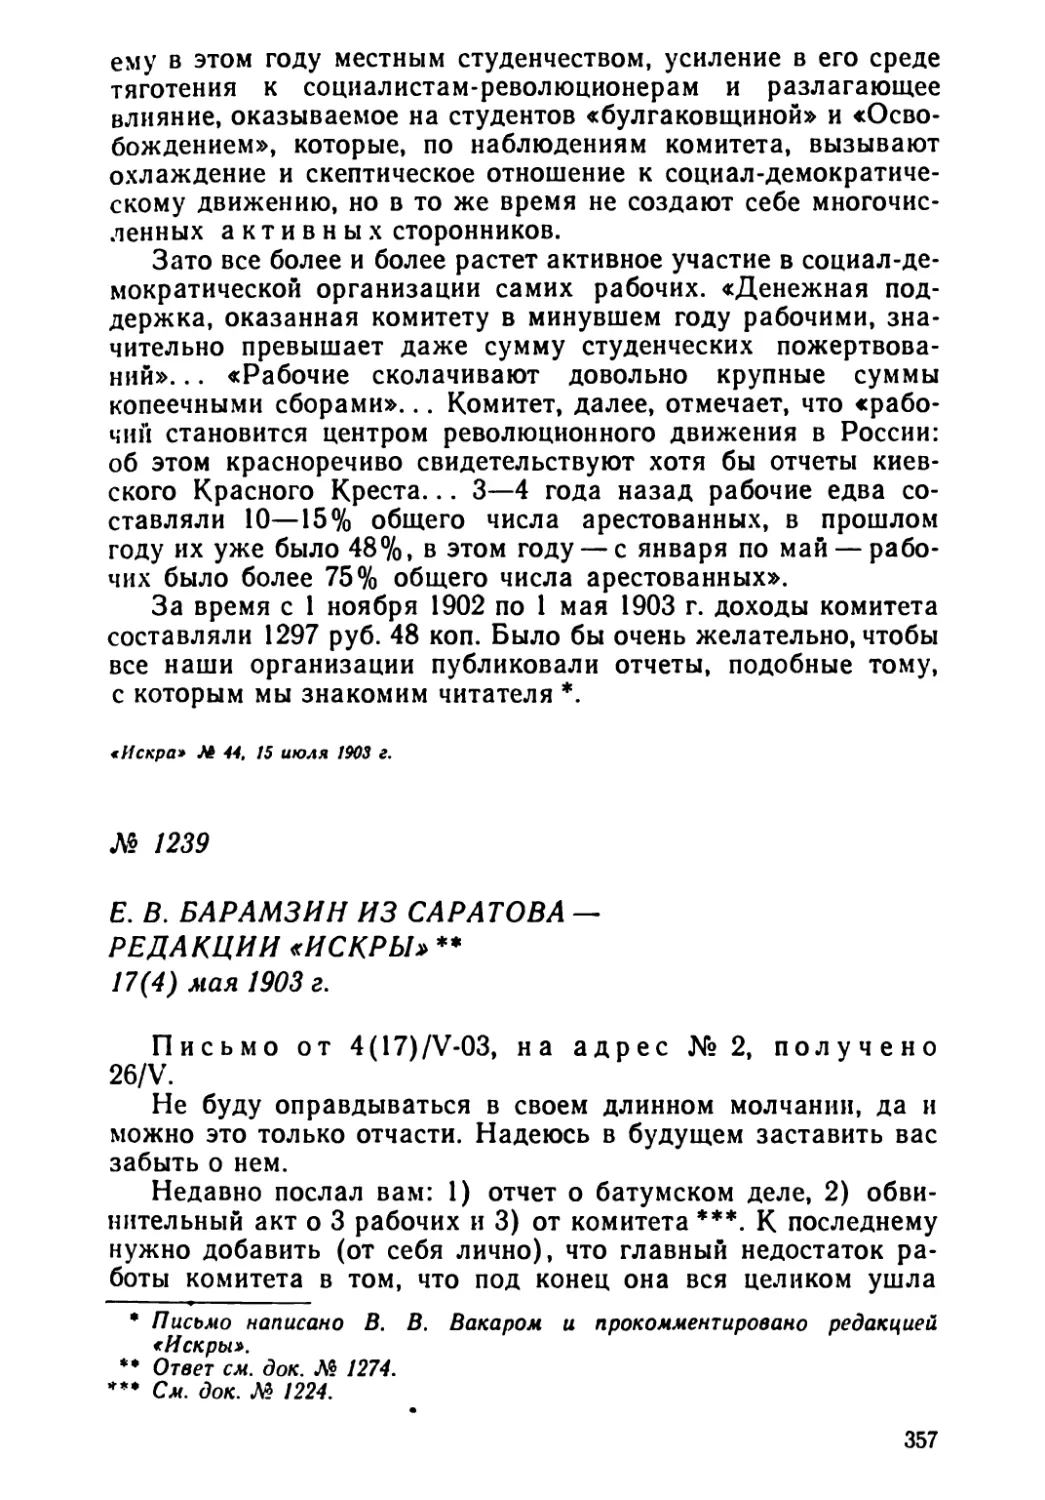 № 1239 Е. В. Барамзин из Саратова — редакции «Искры». 17 мая